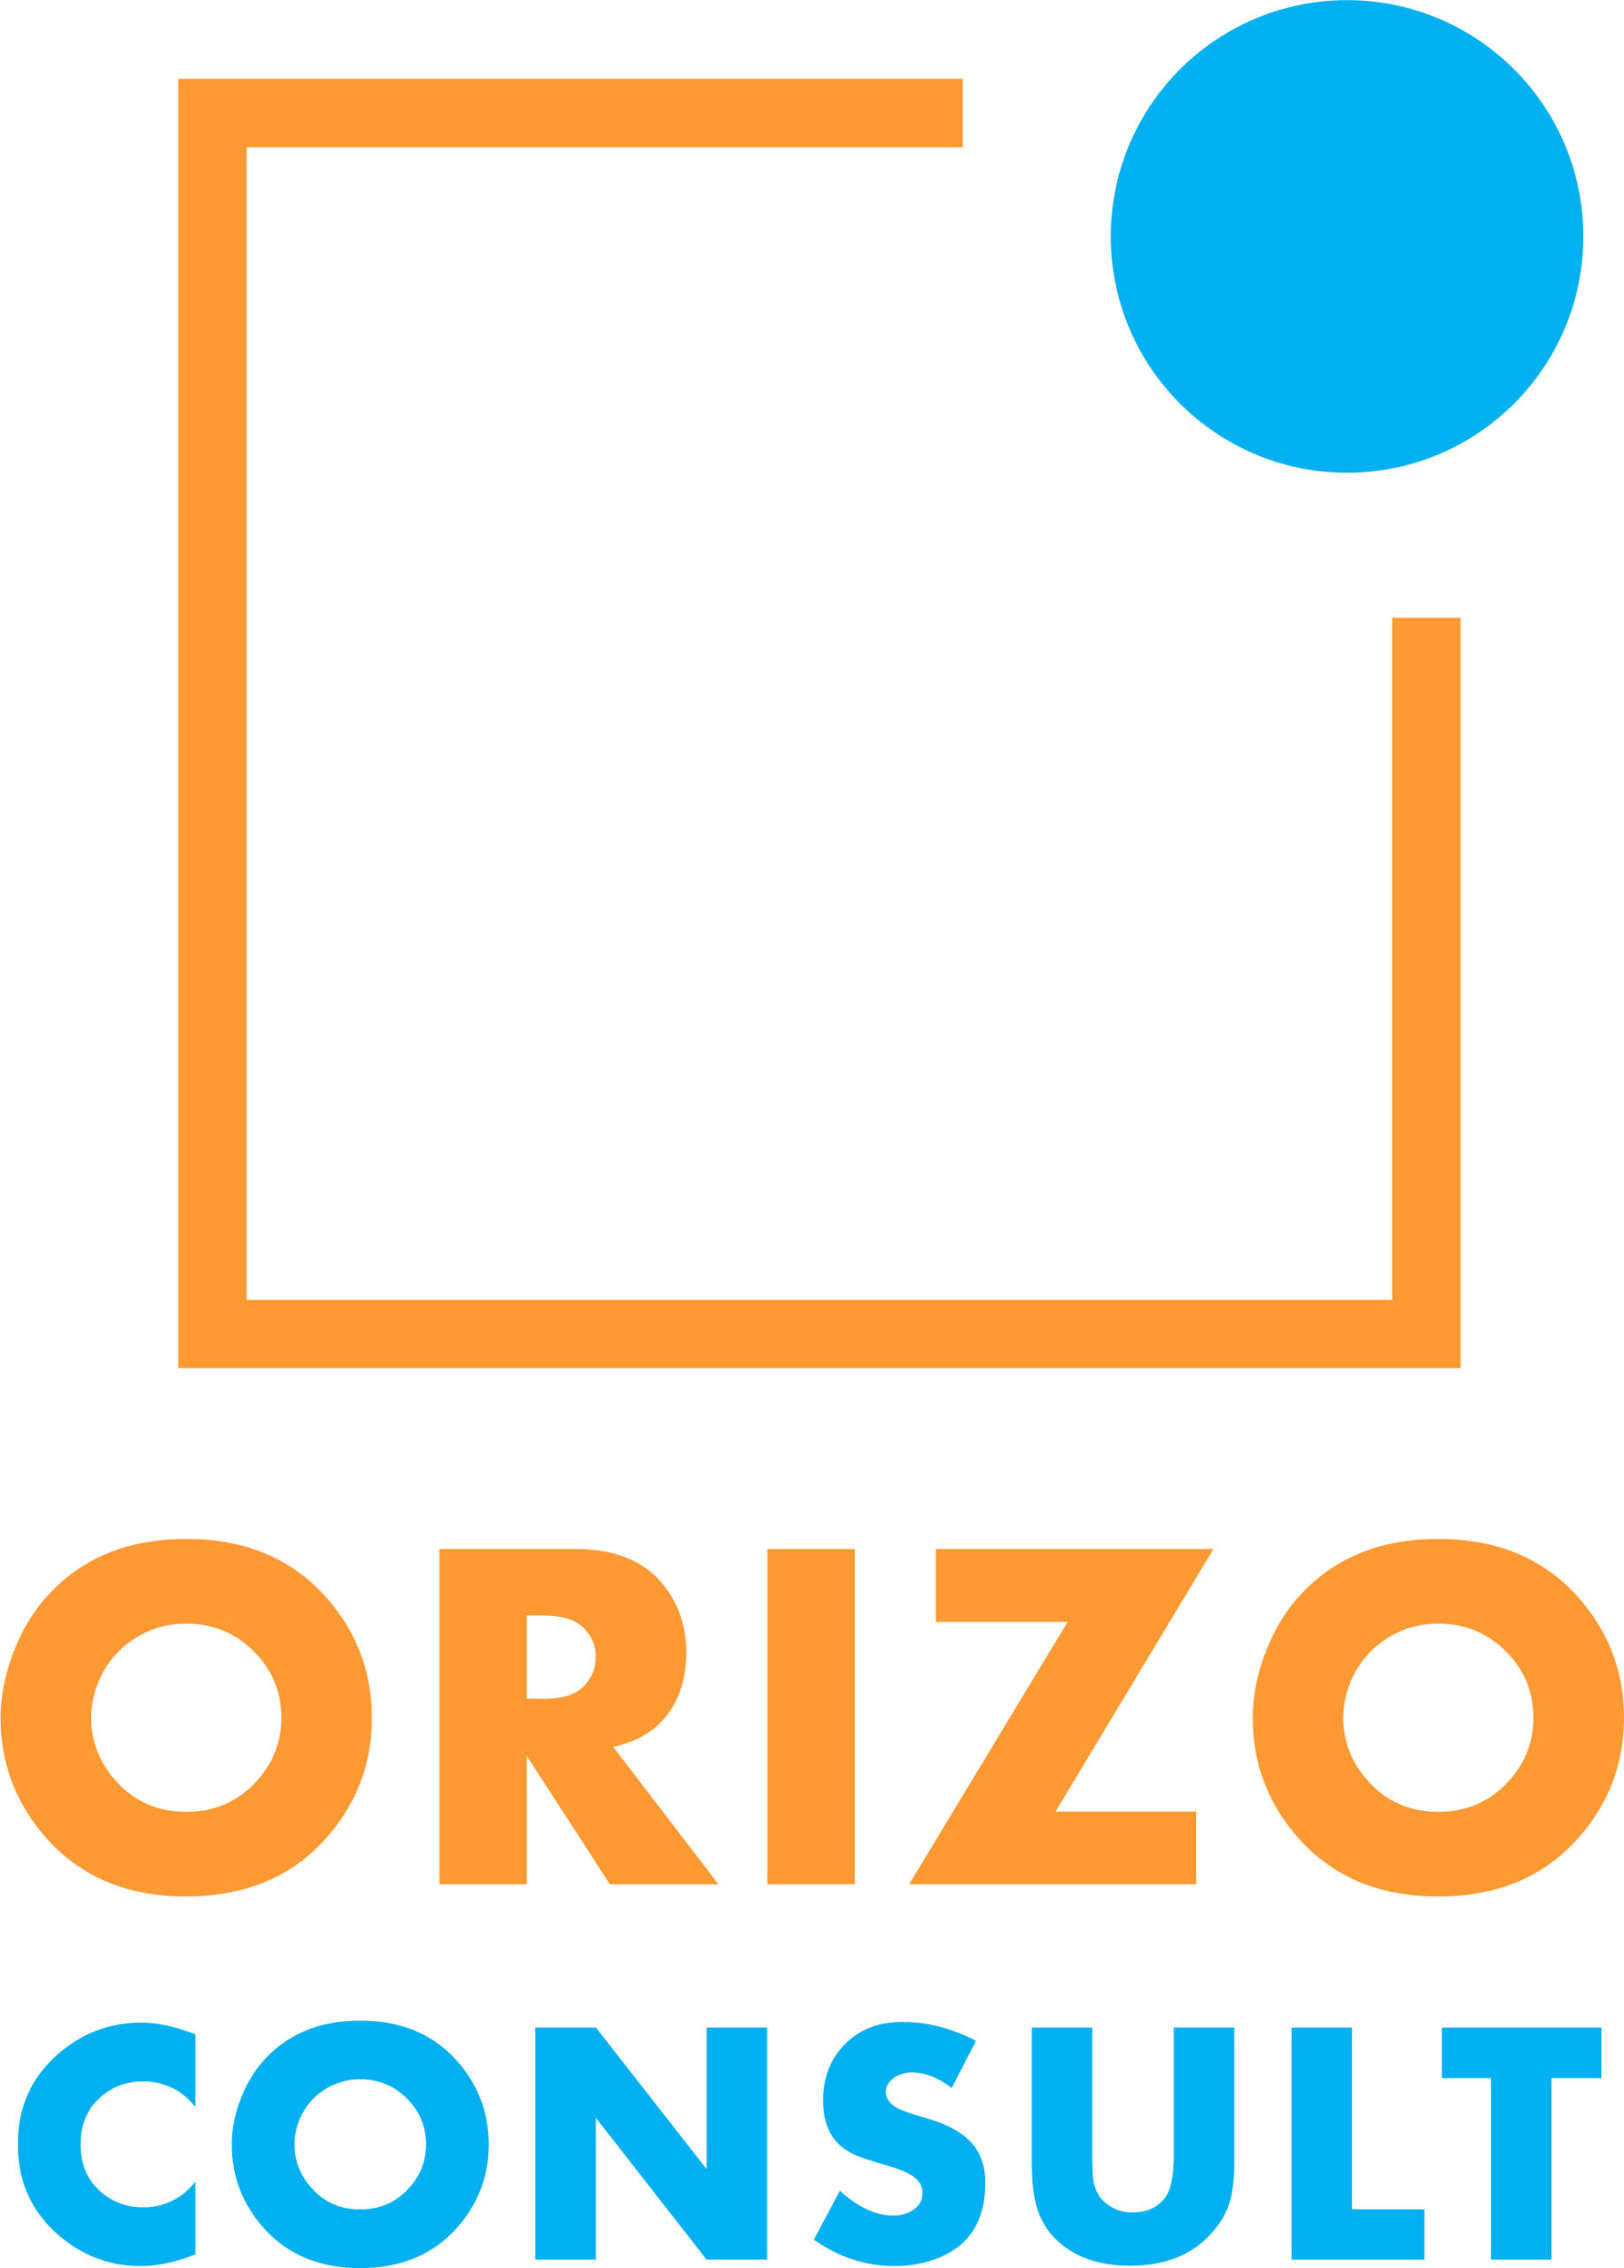 Orizo Consult logo